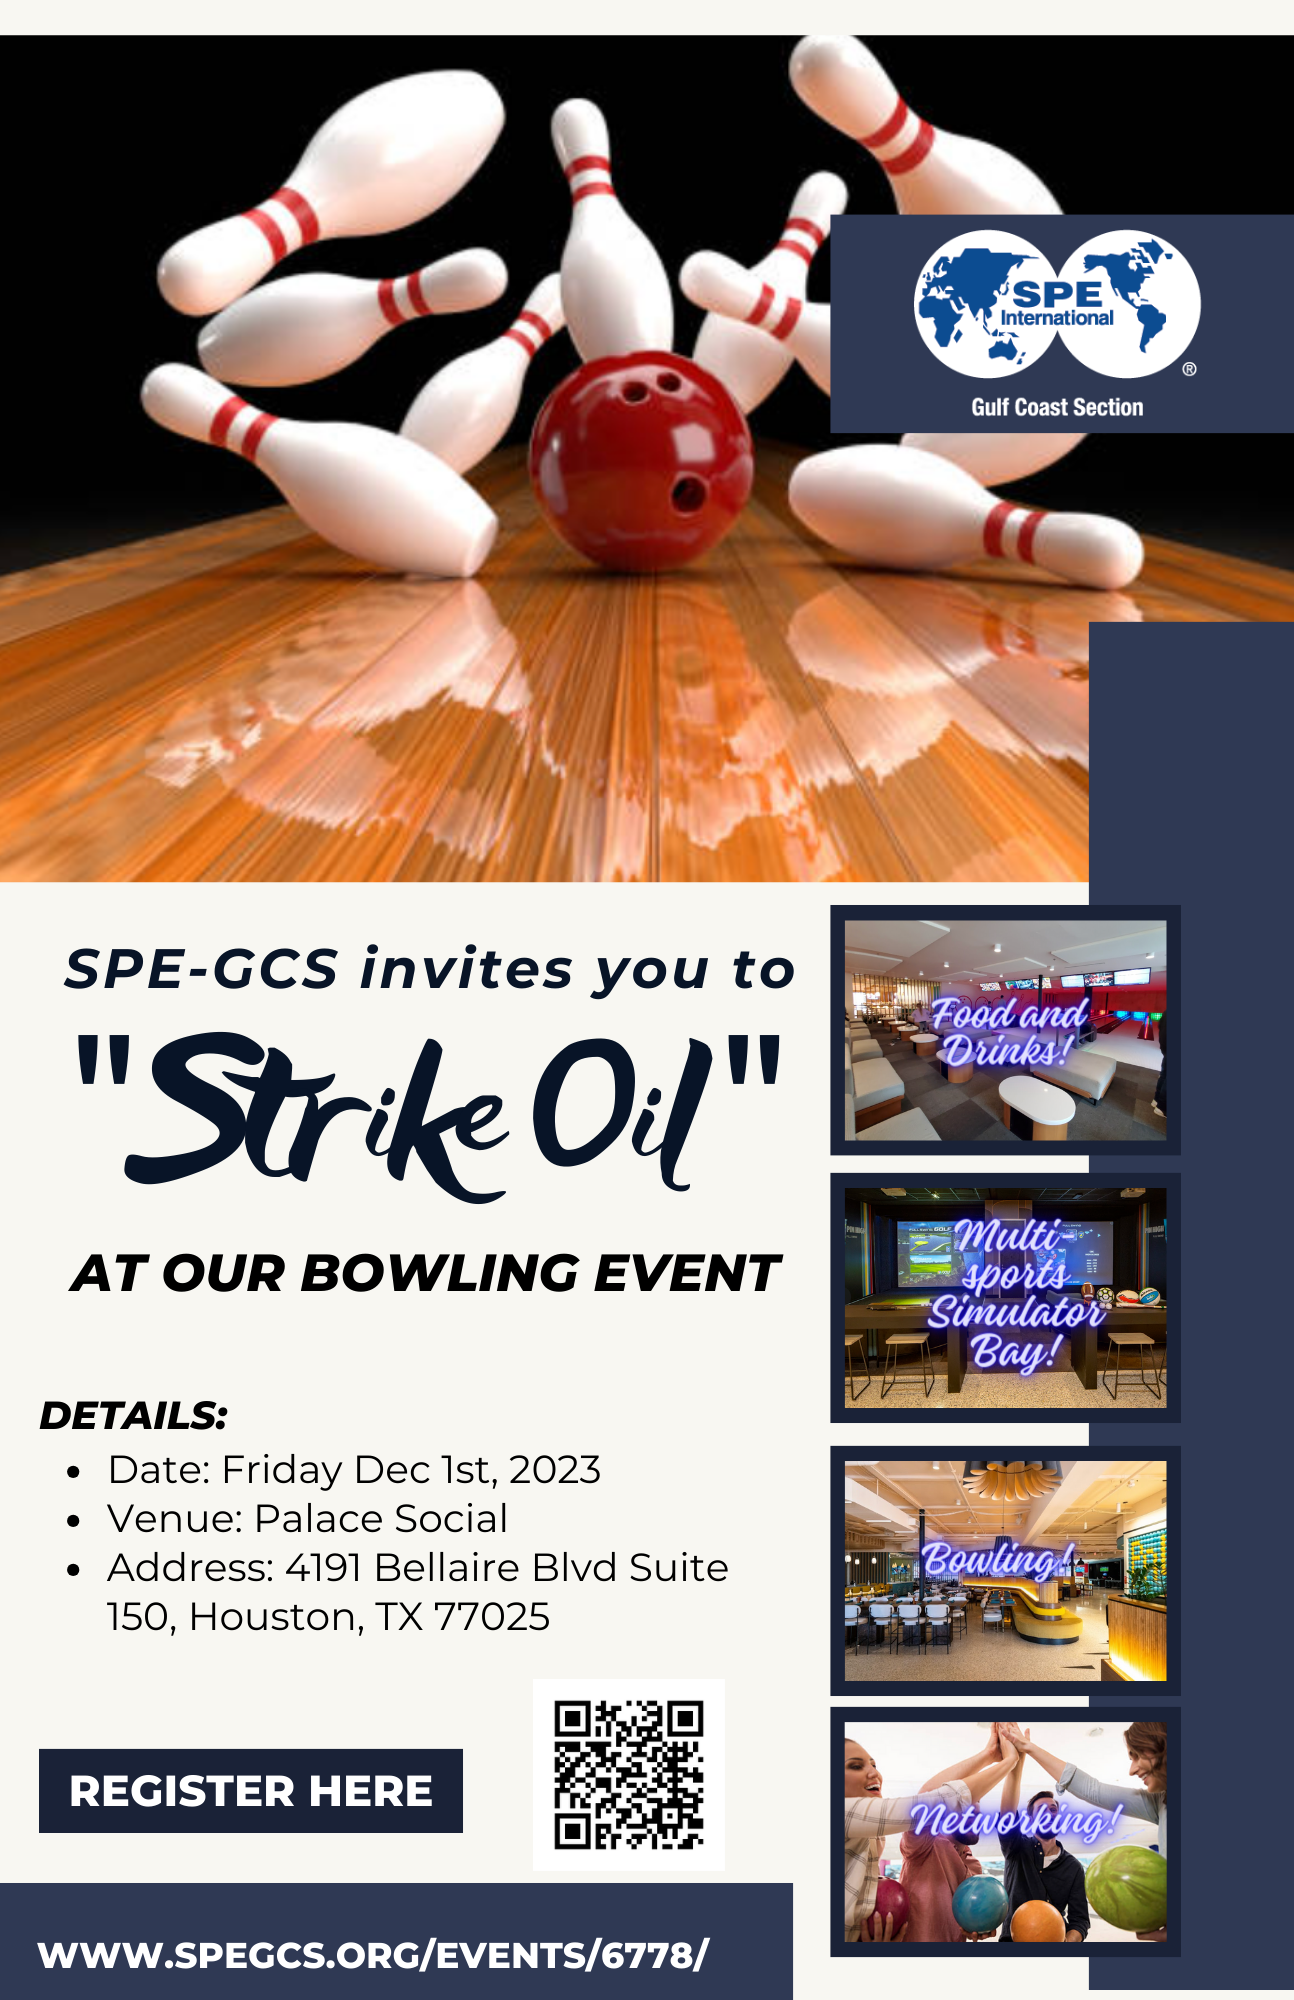 spe-gcs-bowling-event-2023-1-